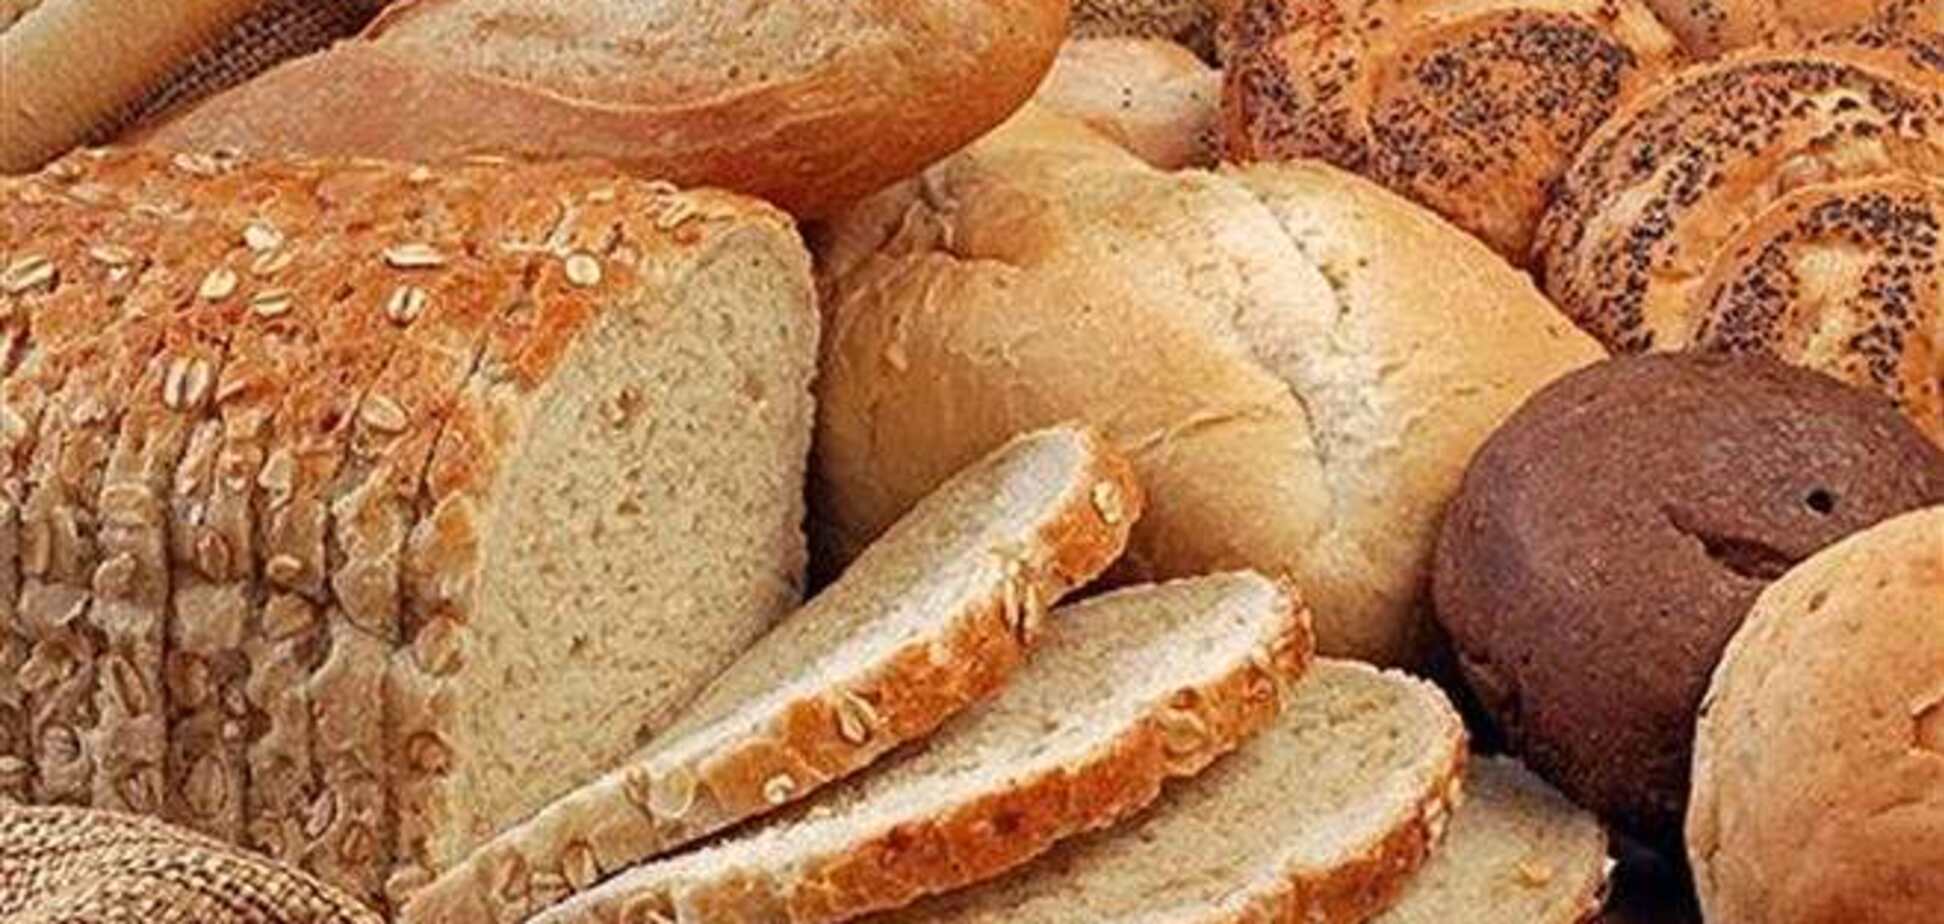 Хлеб провоцирует развитие онкологических заболеваний